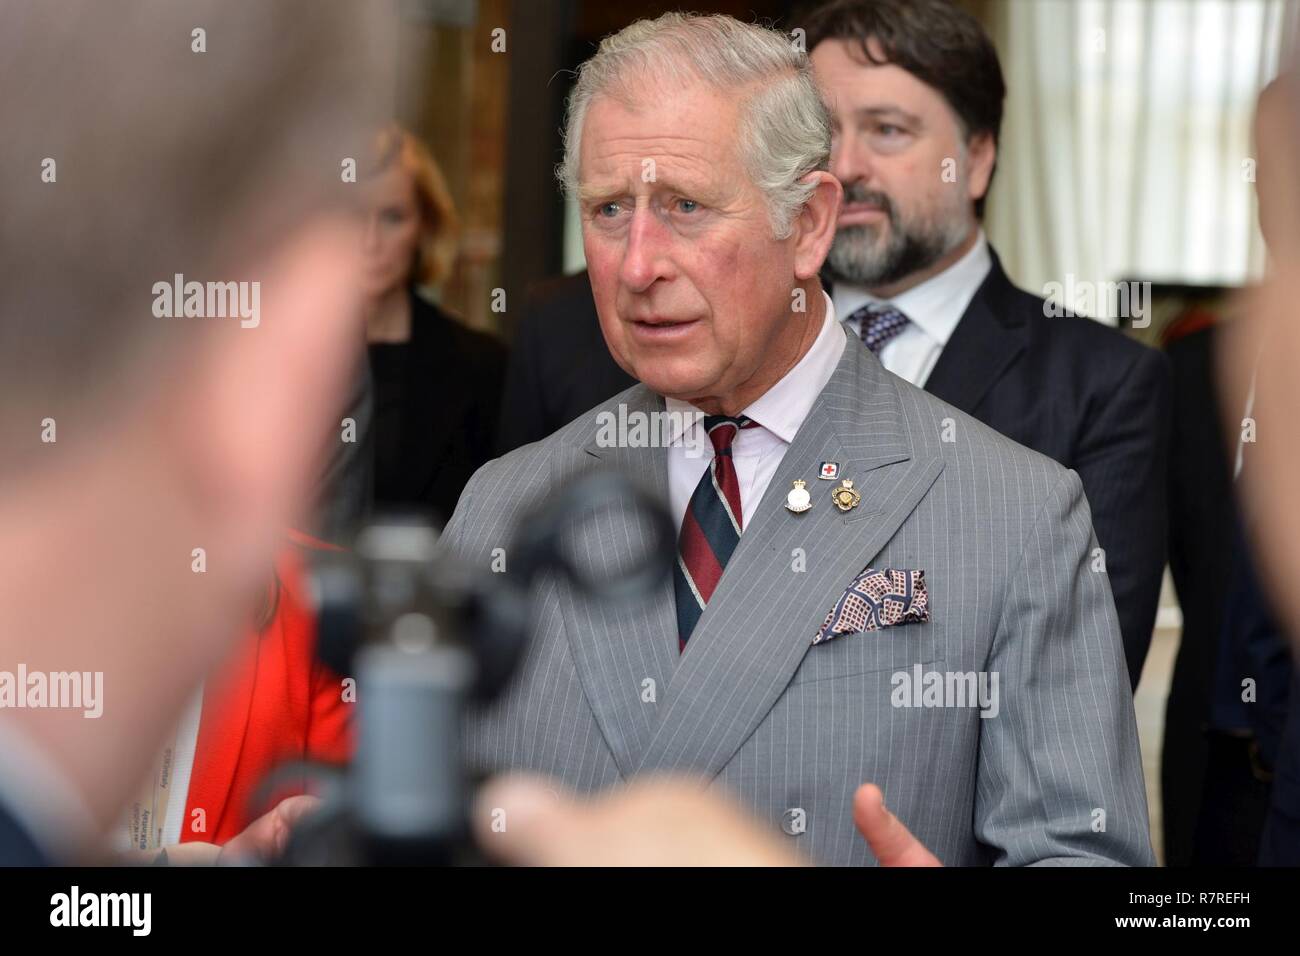 Son Altesse Royale, le Prince Charles, prince de Galles, pendant une visite au Centre d'excellence pour les unités de police de stabilité (COESPU) Vicenza, Italie, le 1 avril 2017. Banque D'Images